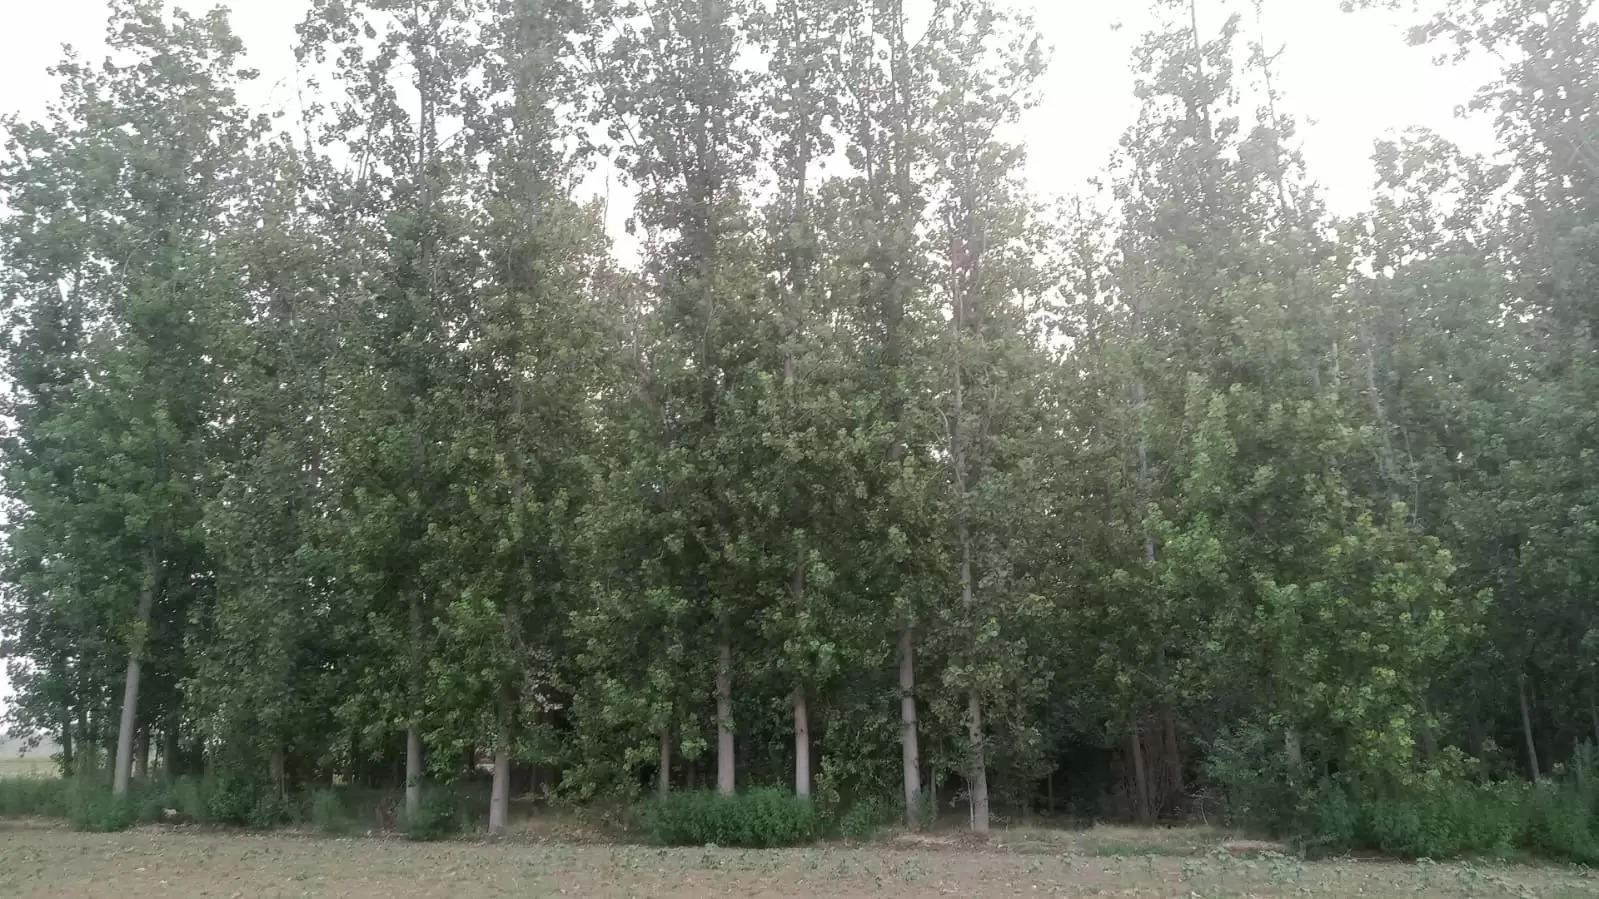 Poplar trees